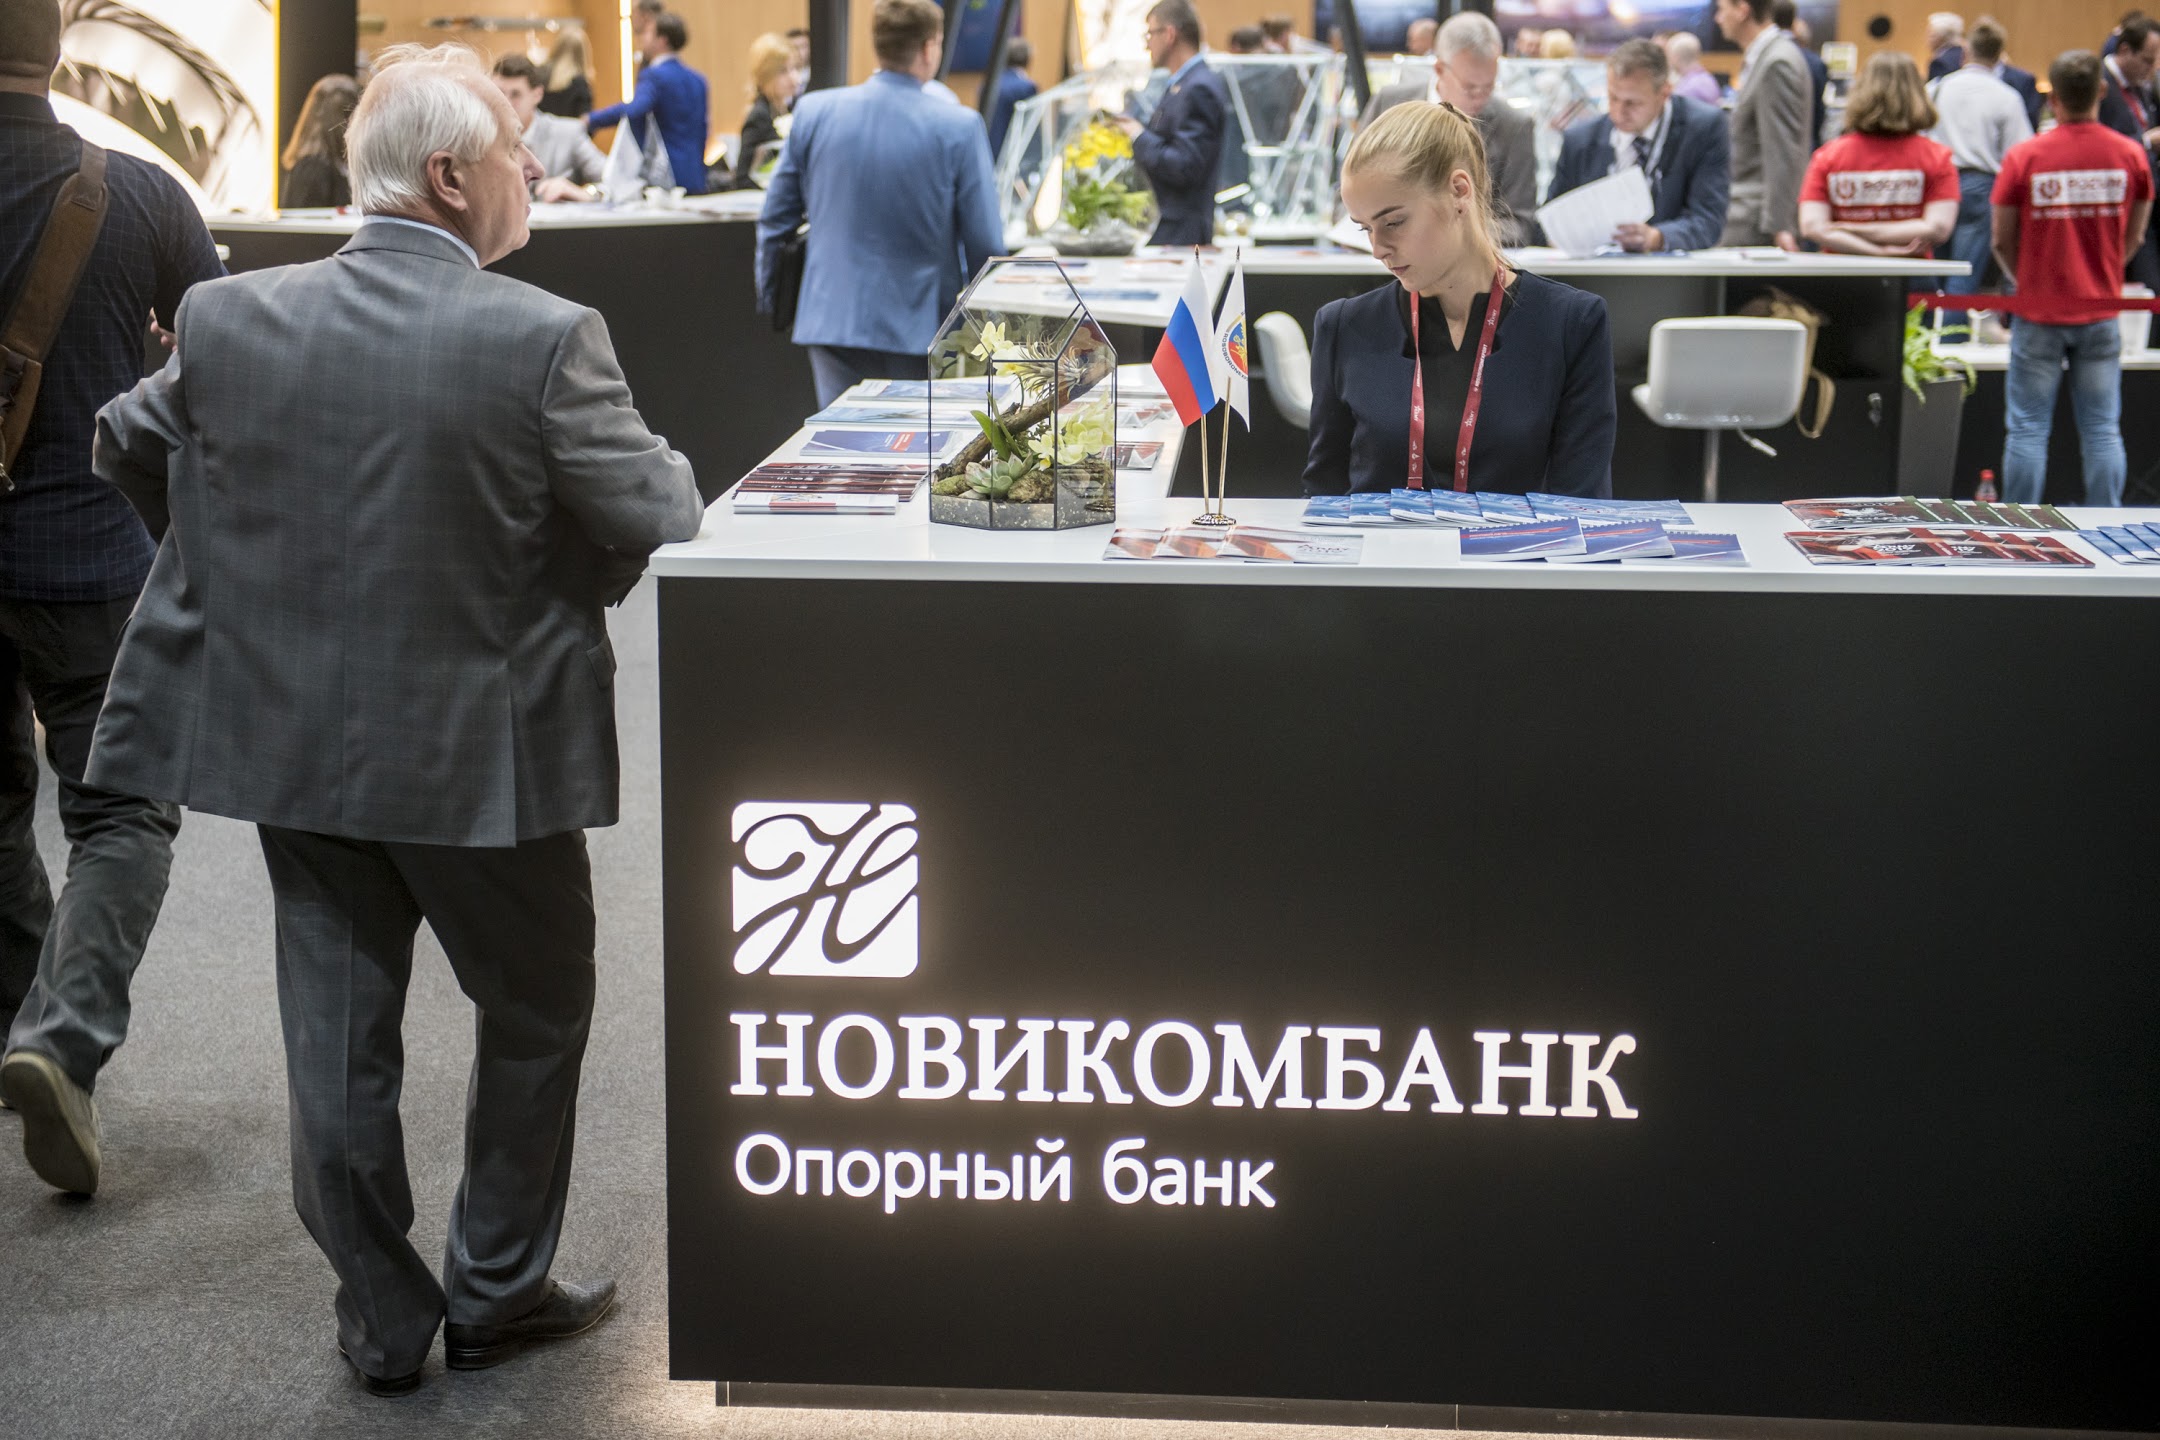 Новикомбанк предоставил «КАМА ДИЗЕЛЬ» банковскую гарантию на 3,8 млрд рублей 